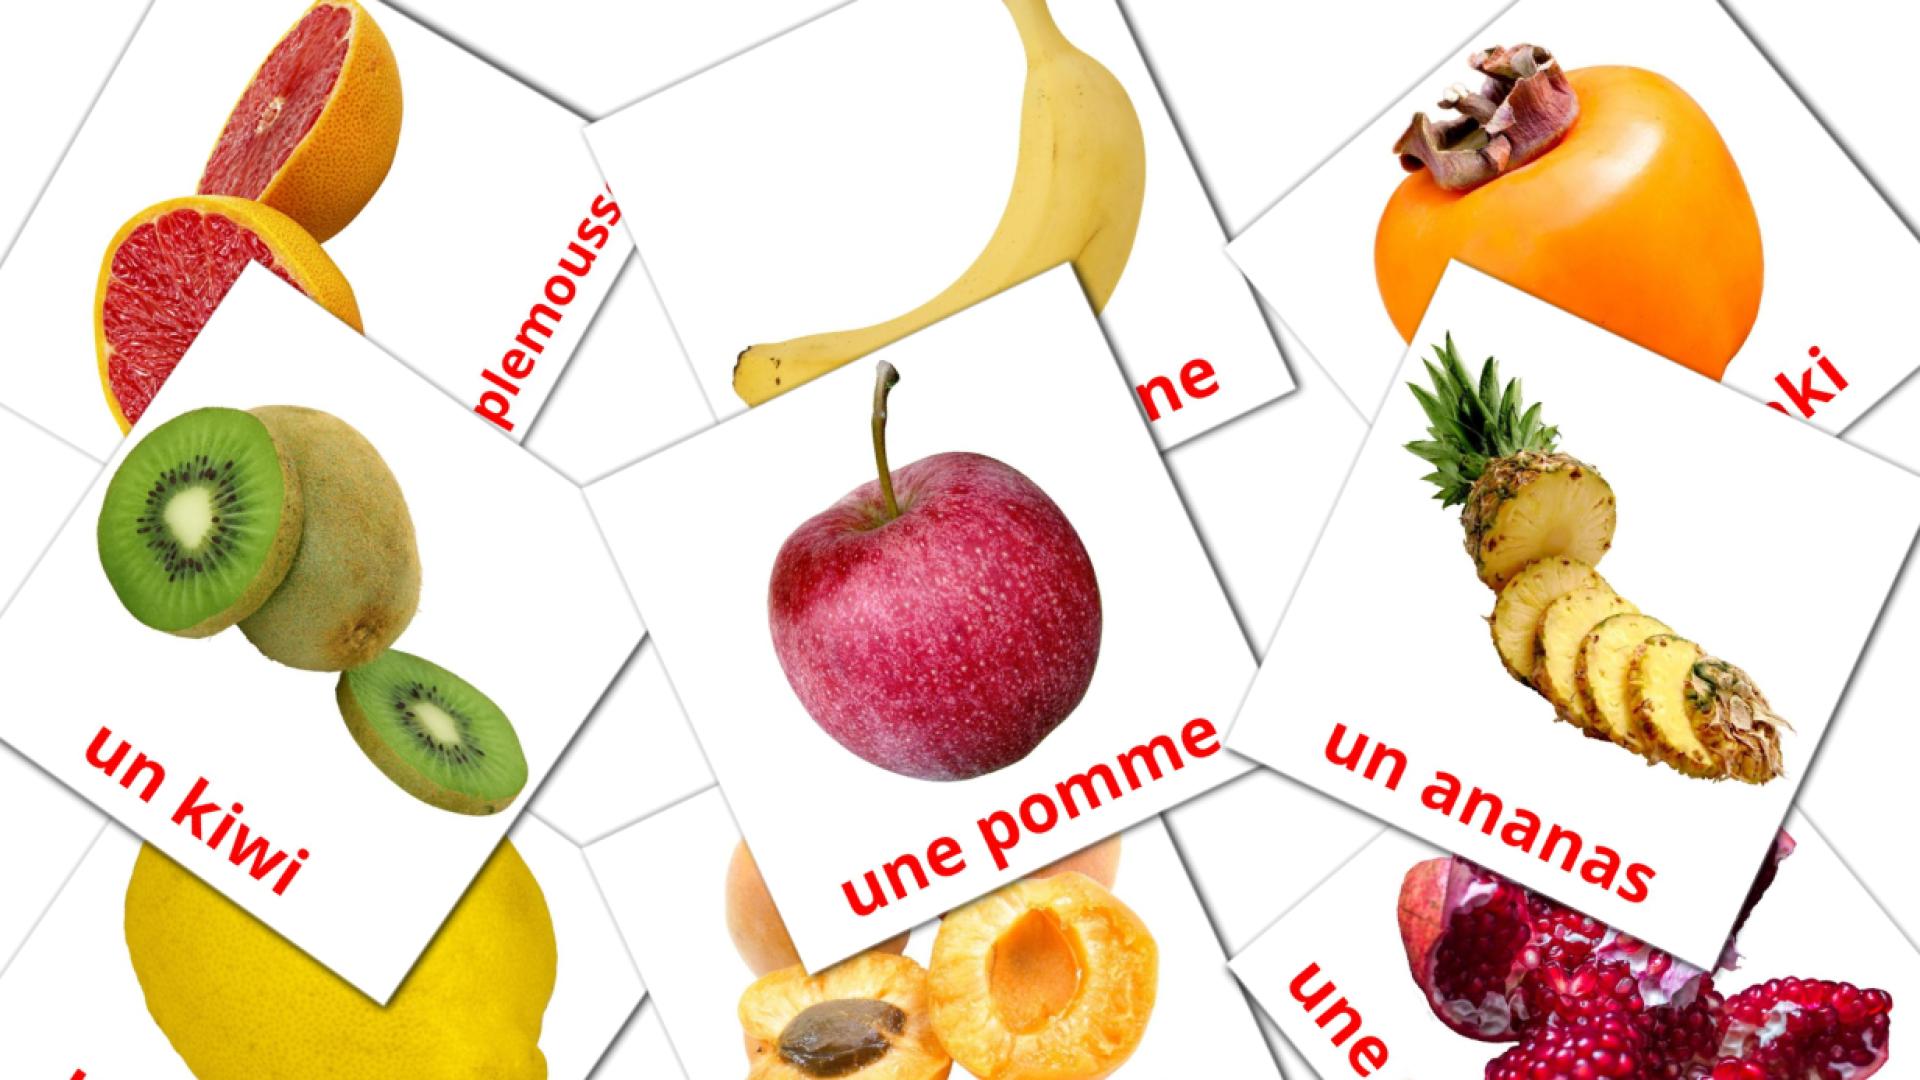 Bildkarten für Les Fruits